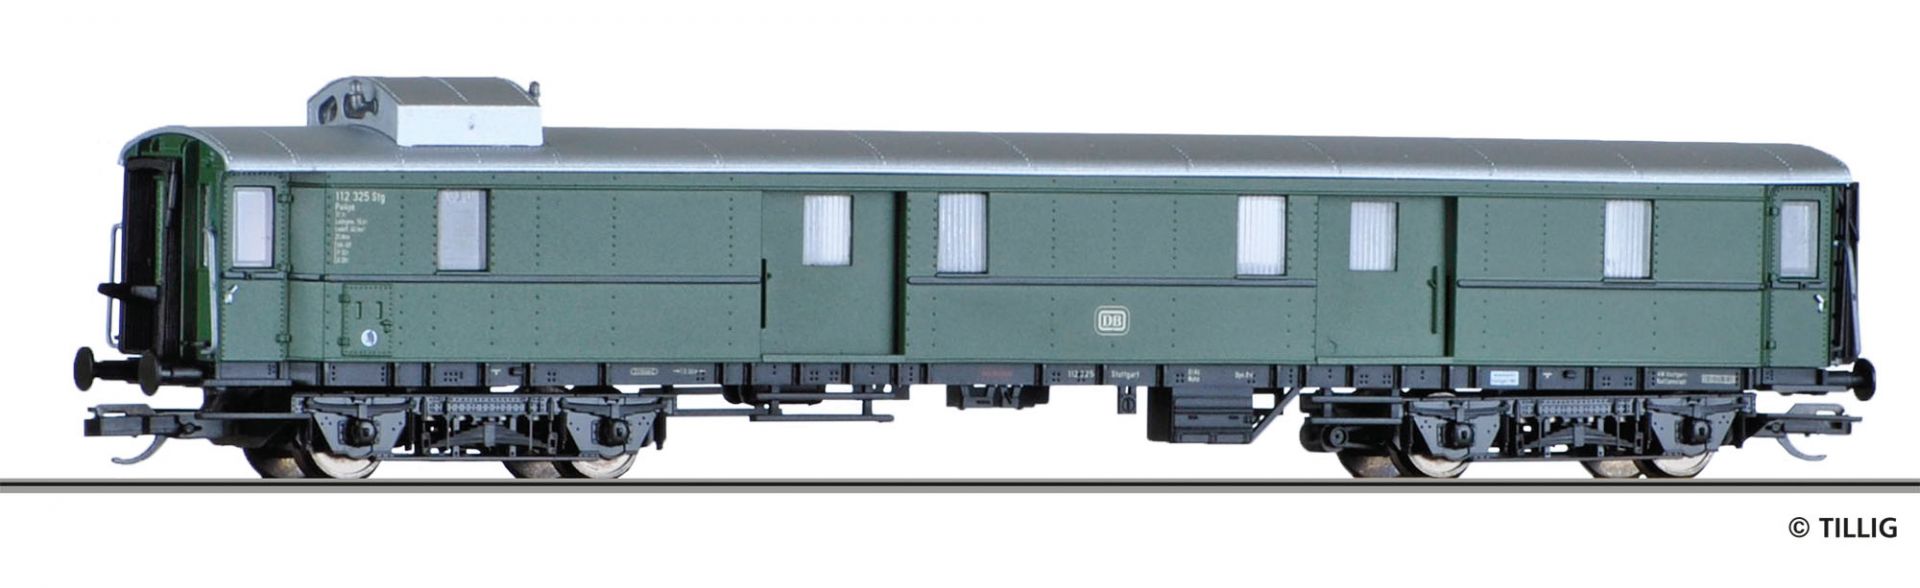 13392 | Gepäckwagen DB -werksseitig ausverkauft-